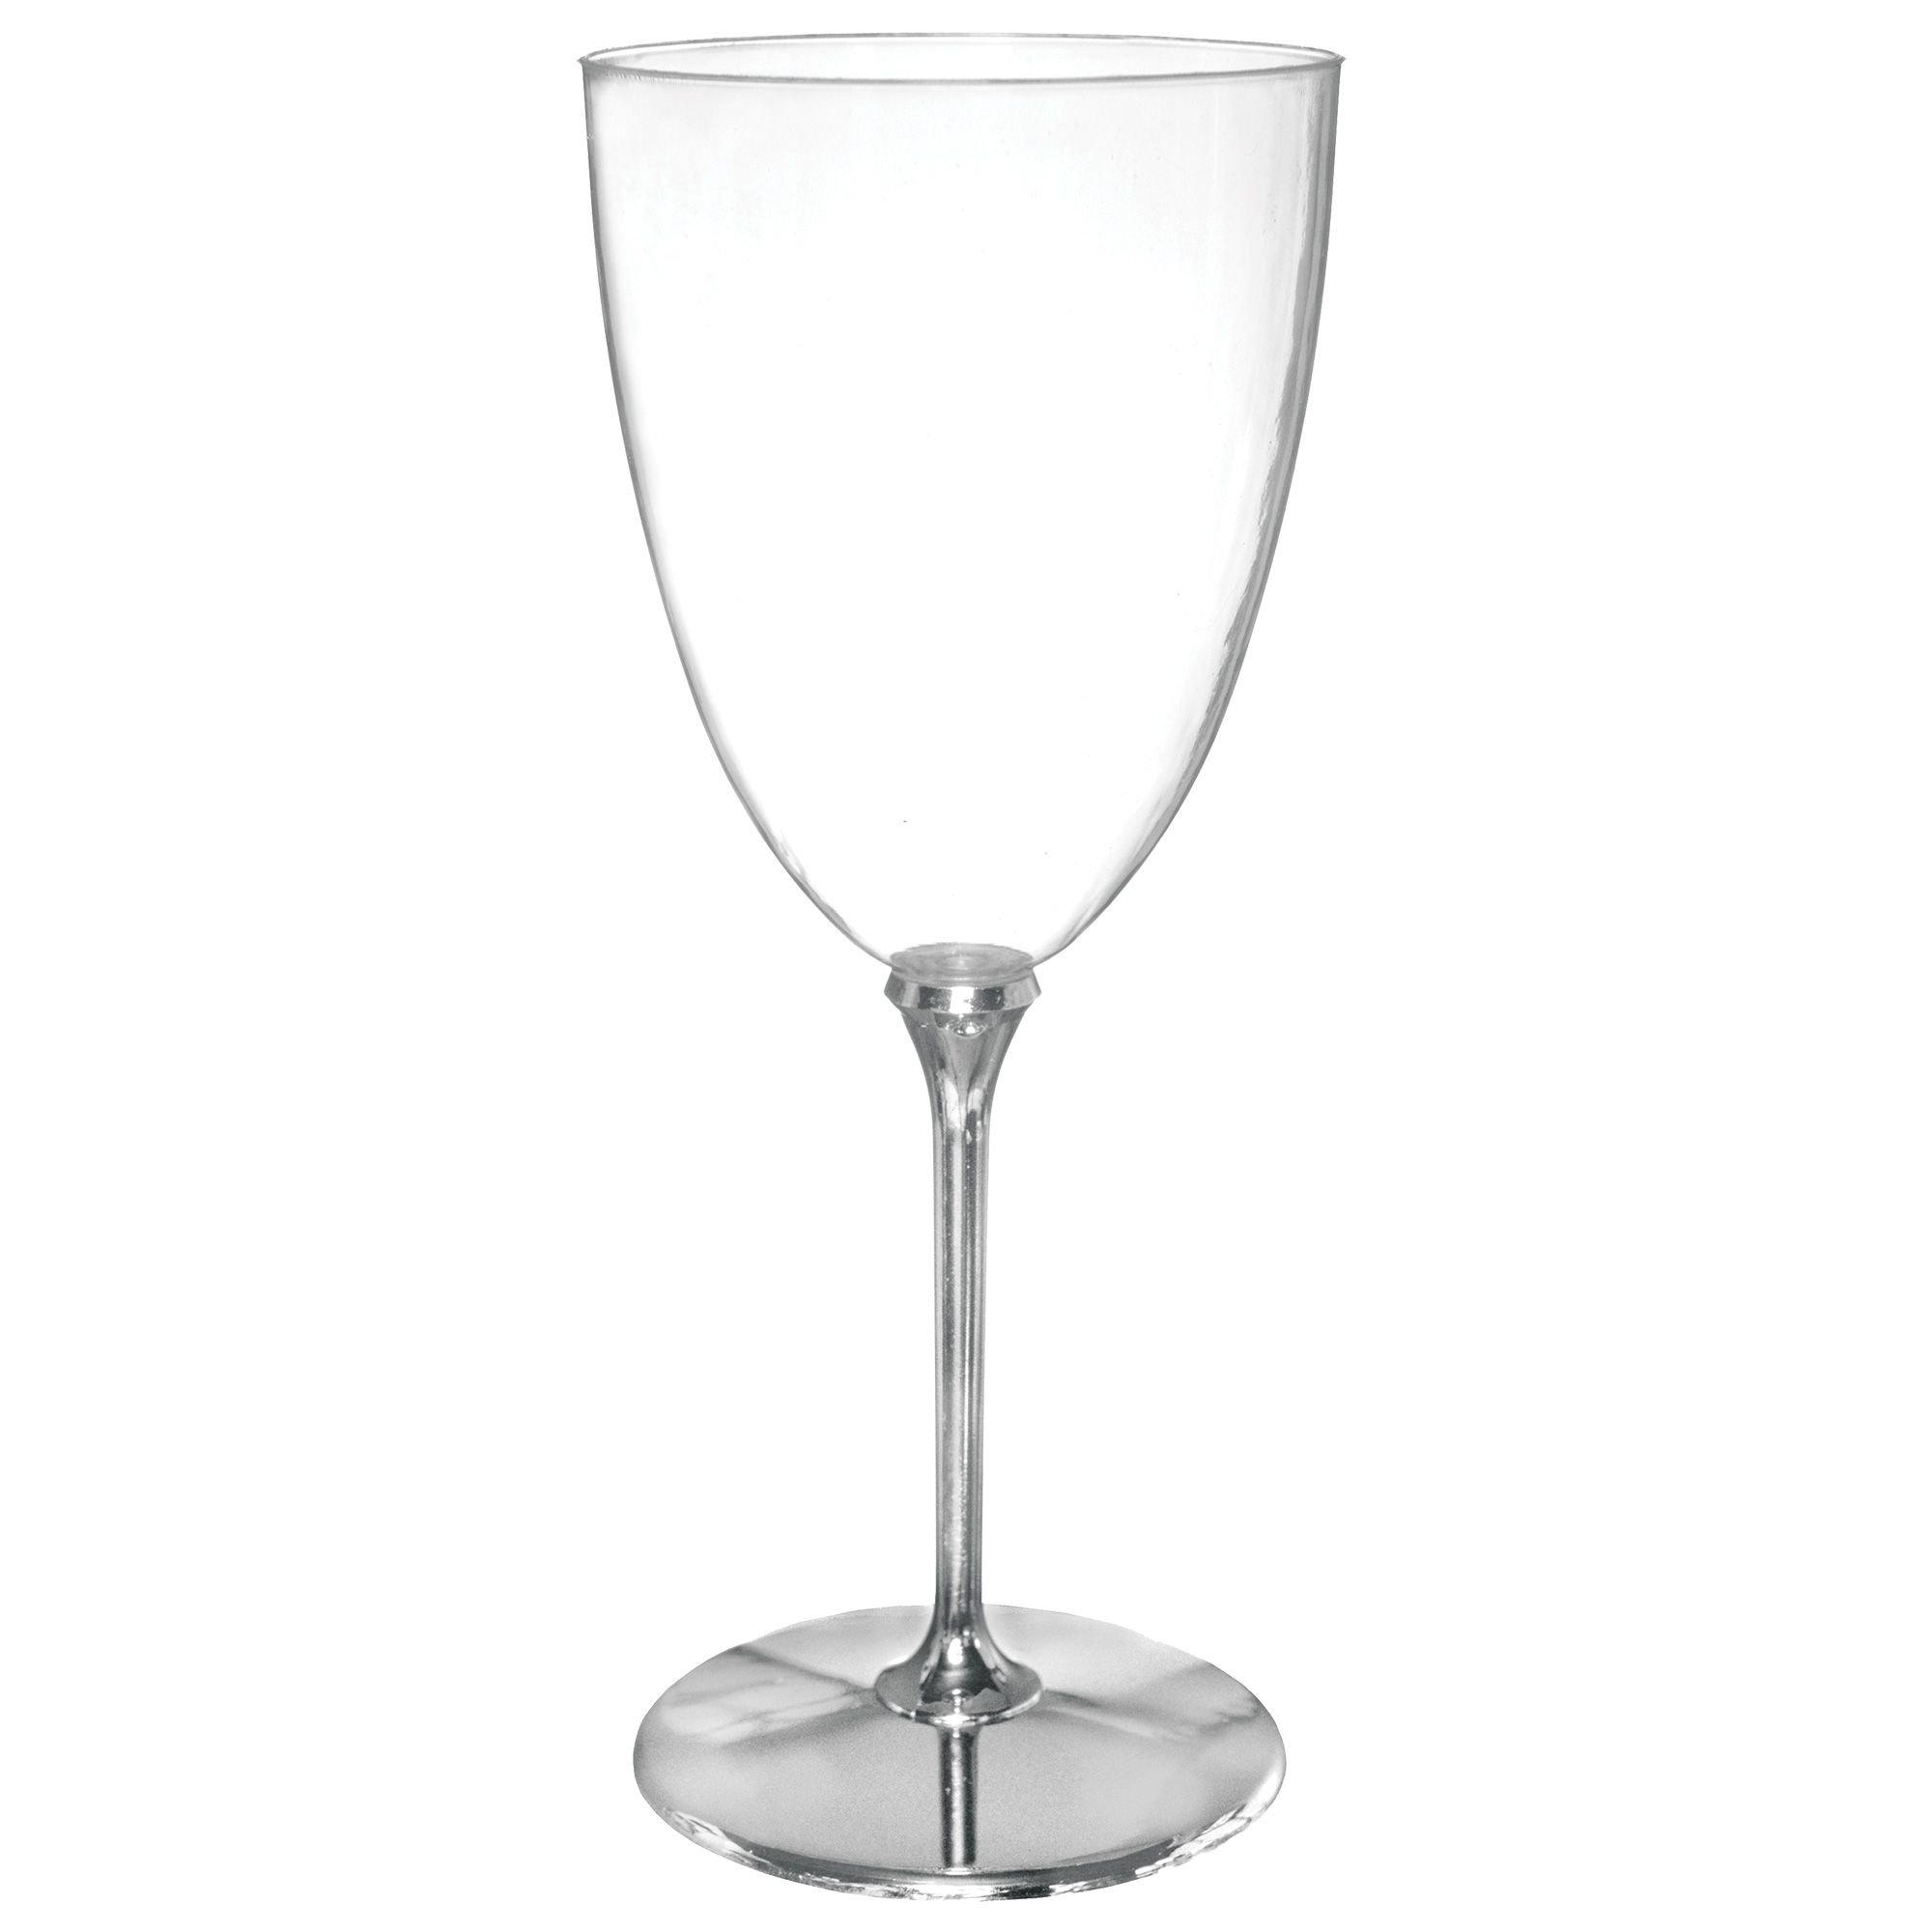 Silver Rim Clear Plastic Wine Glasses